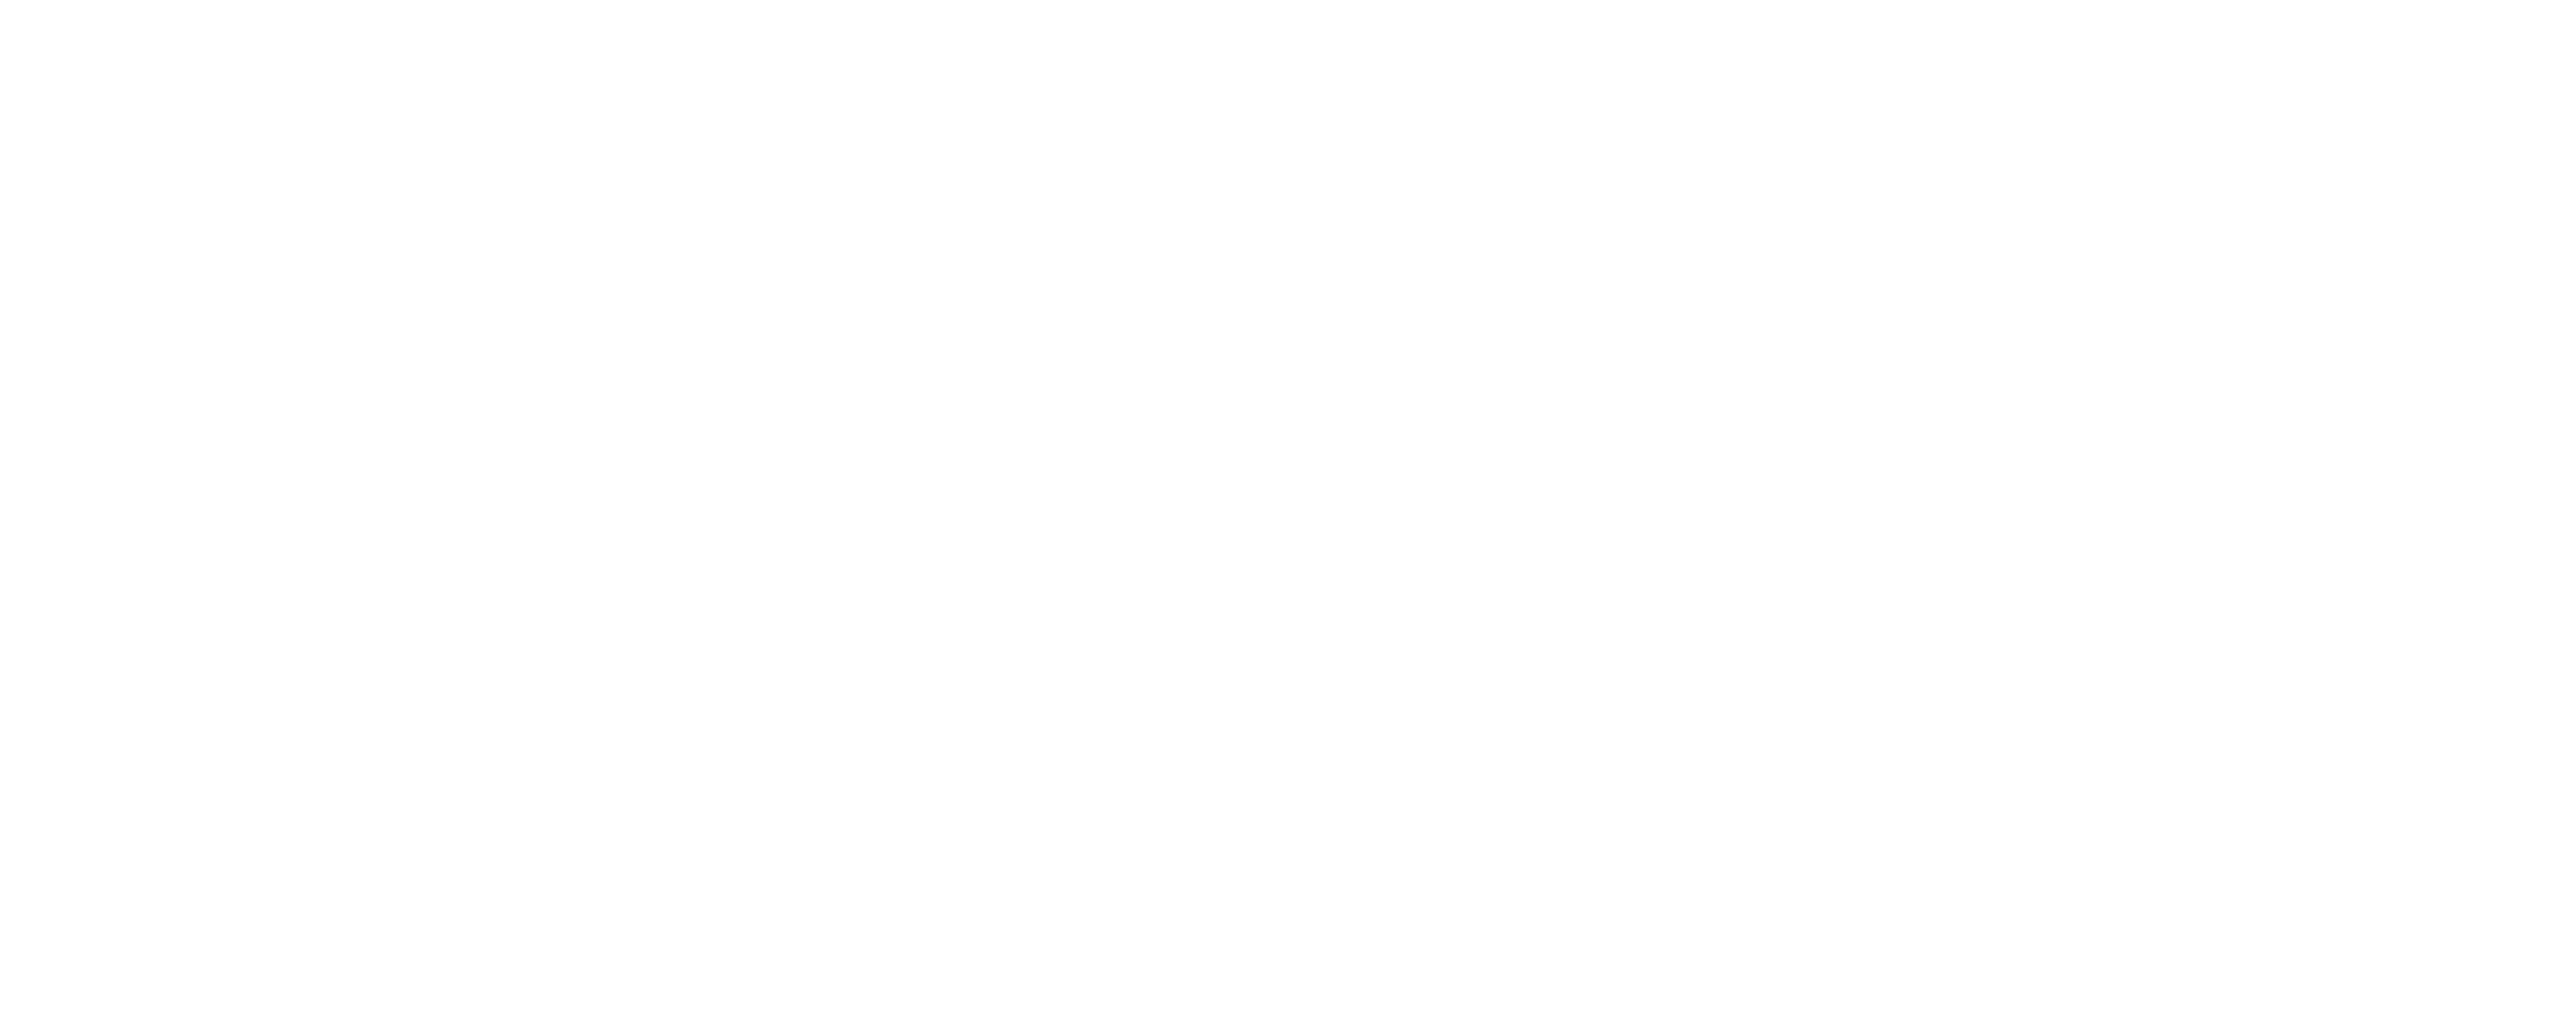 AQC Logo